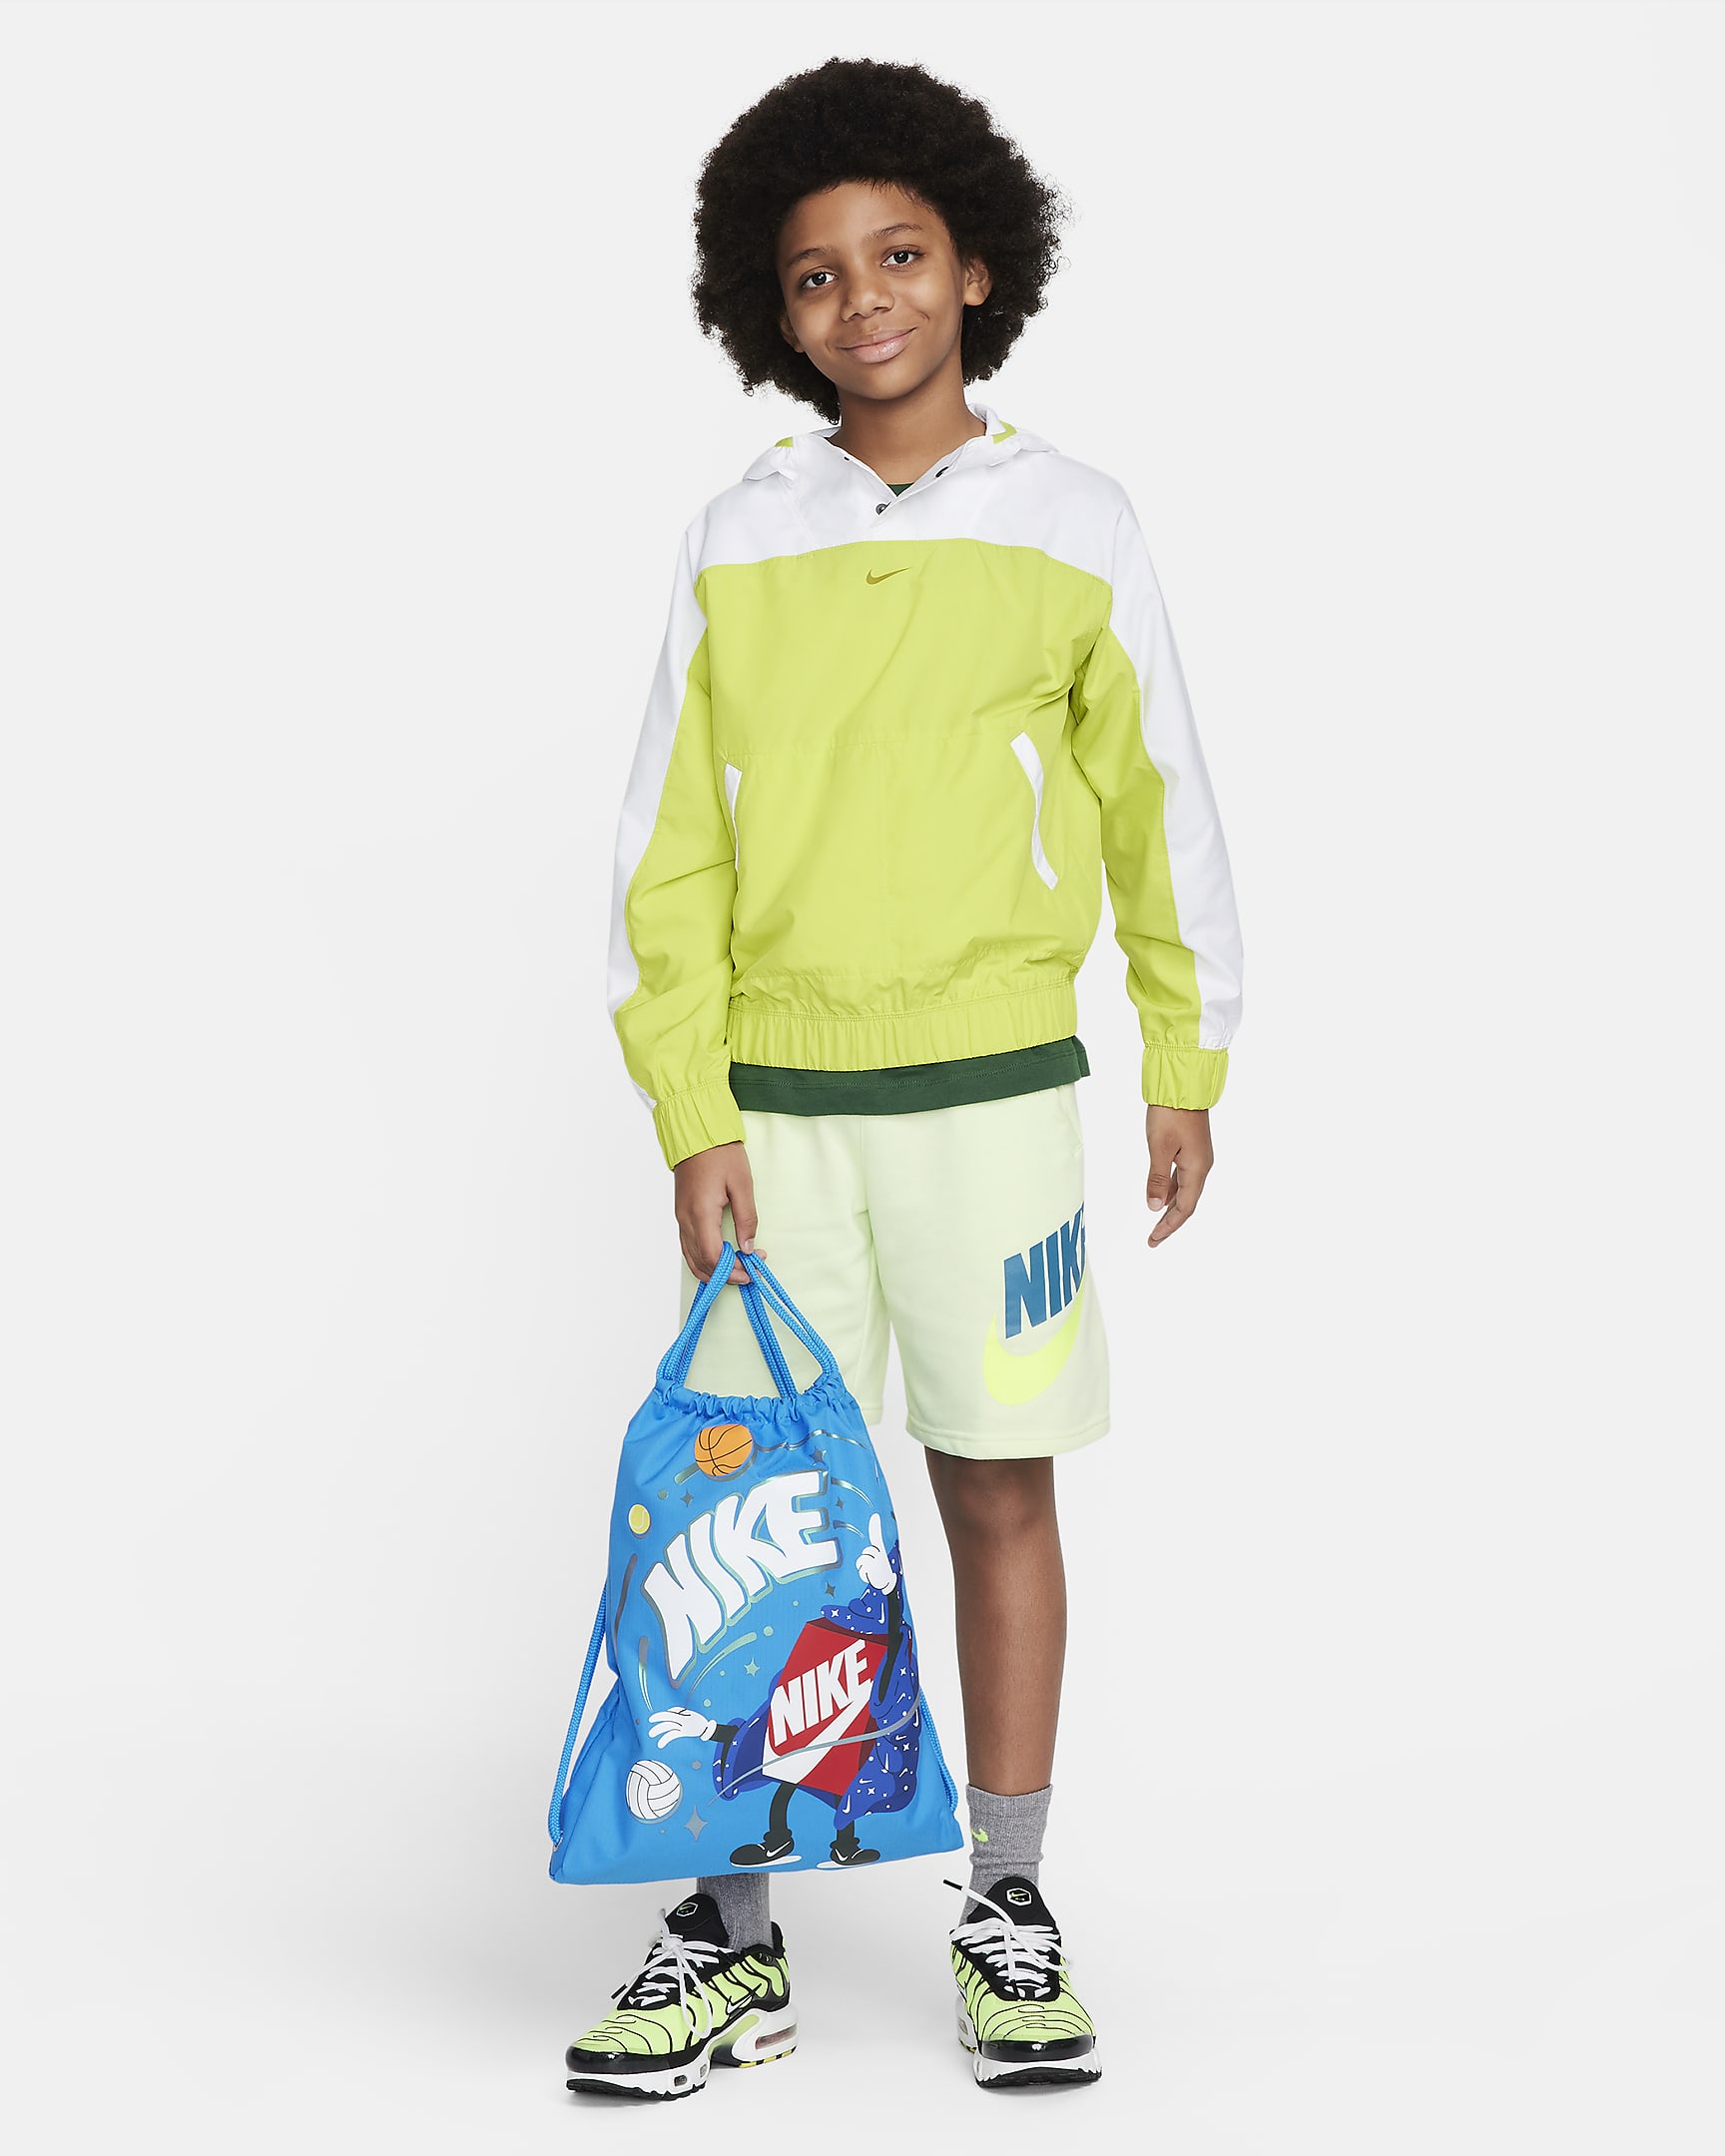 Nike Kids' Drawstring Bag (12L). Nike SG